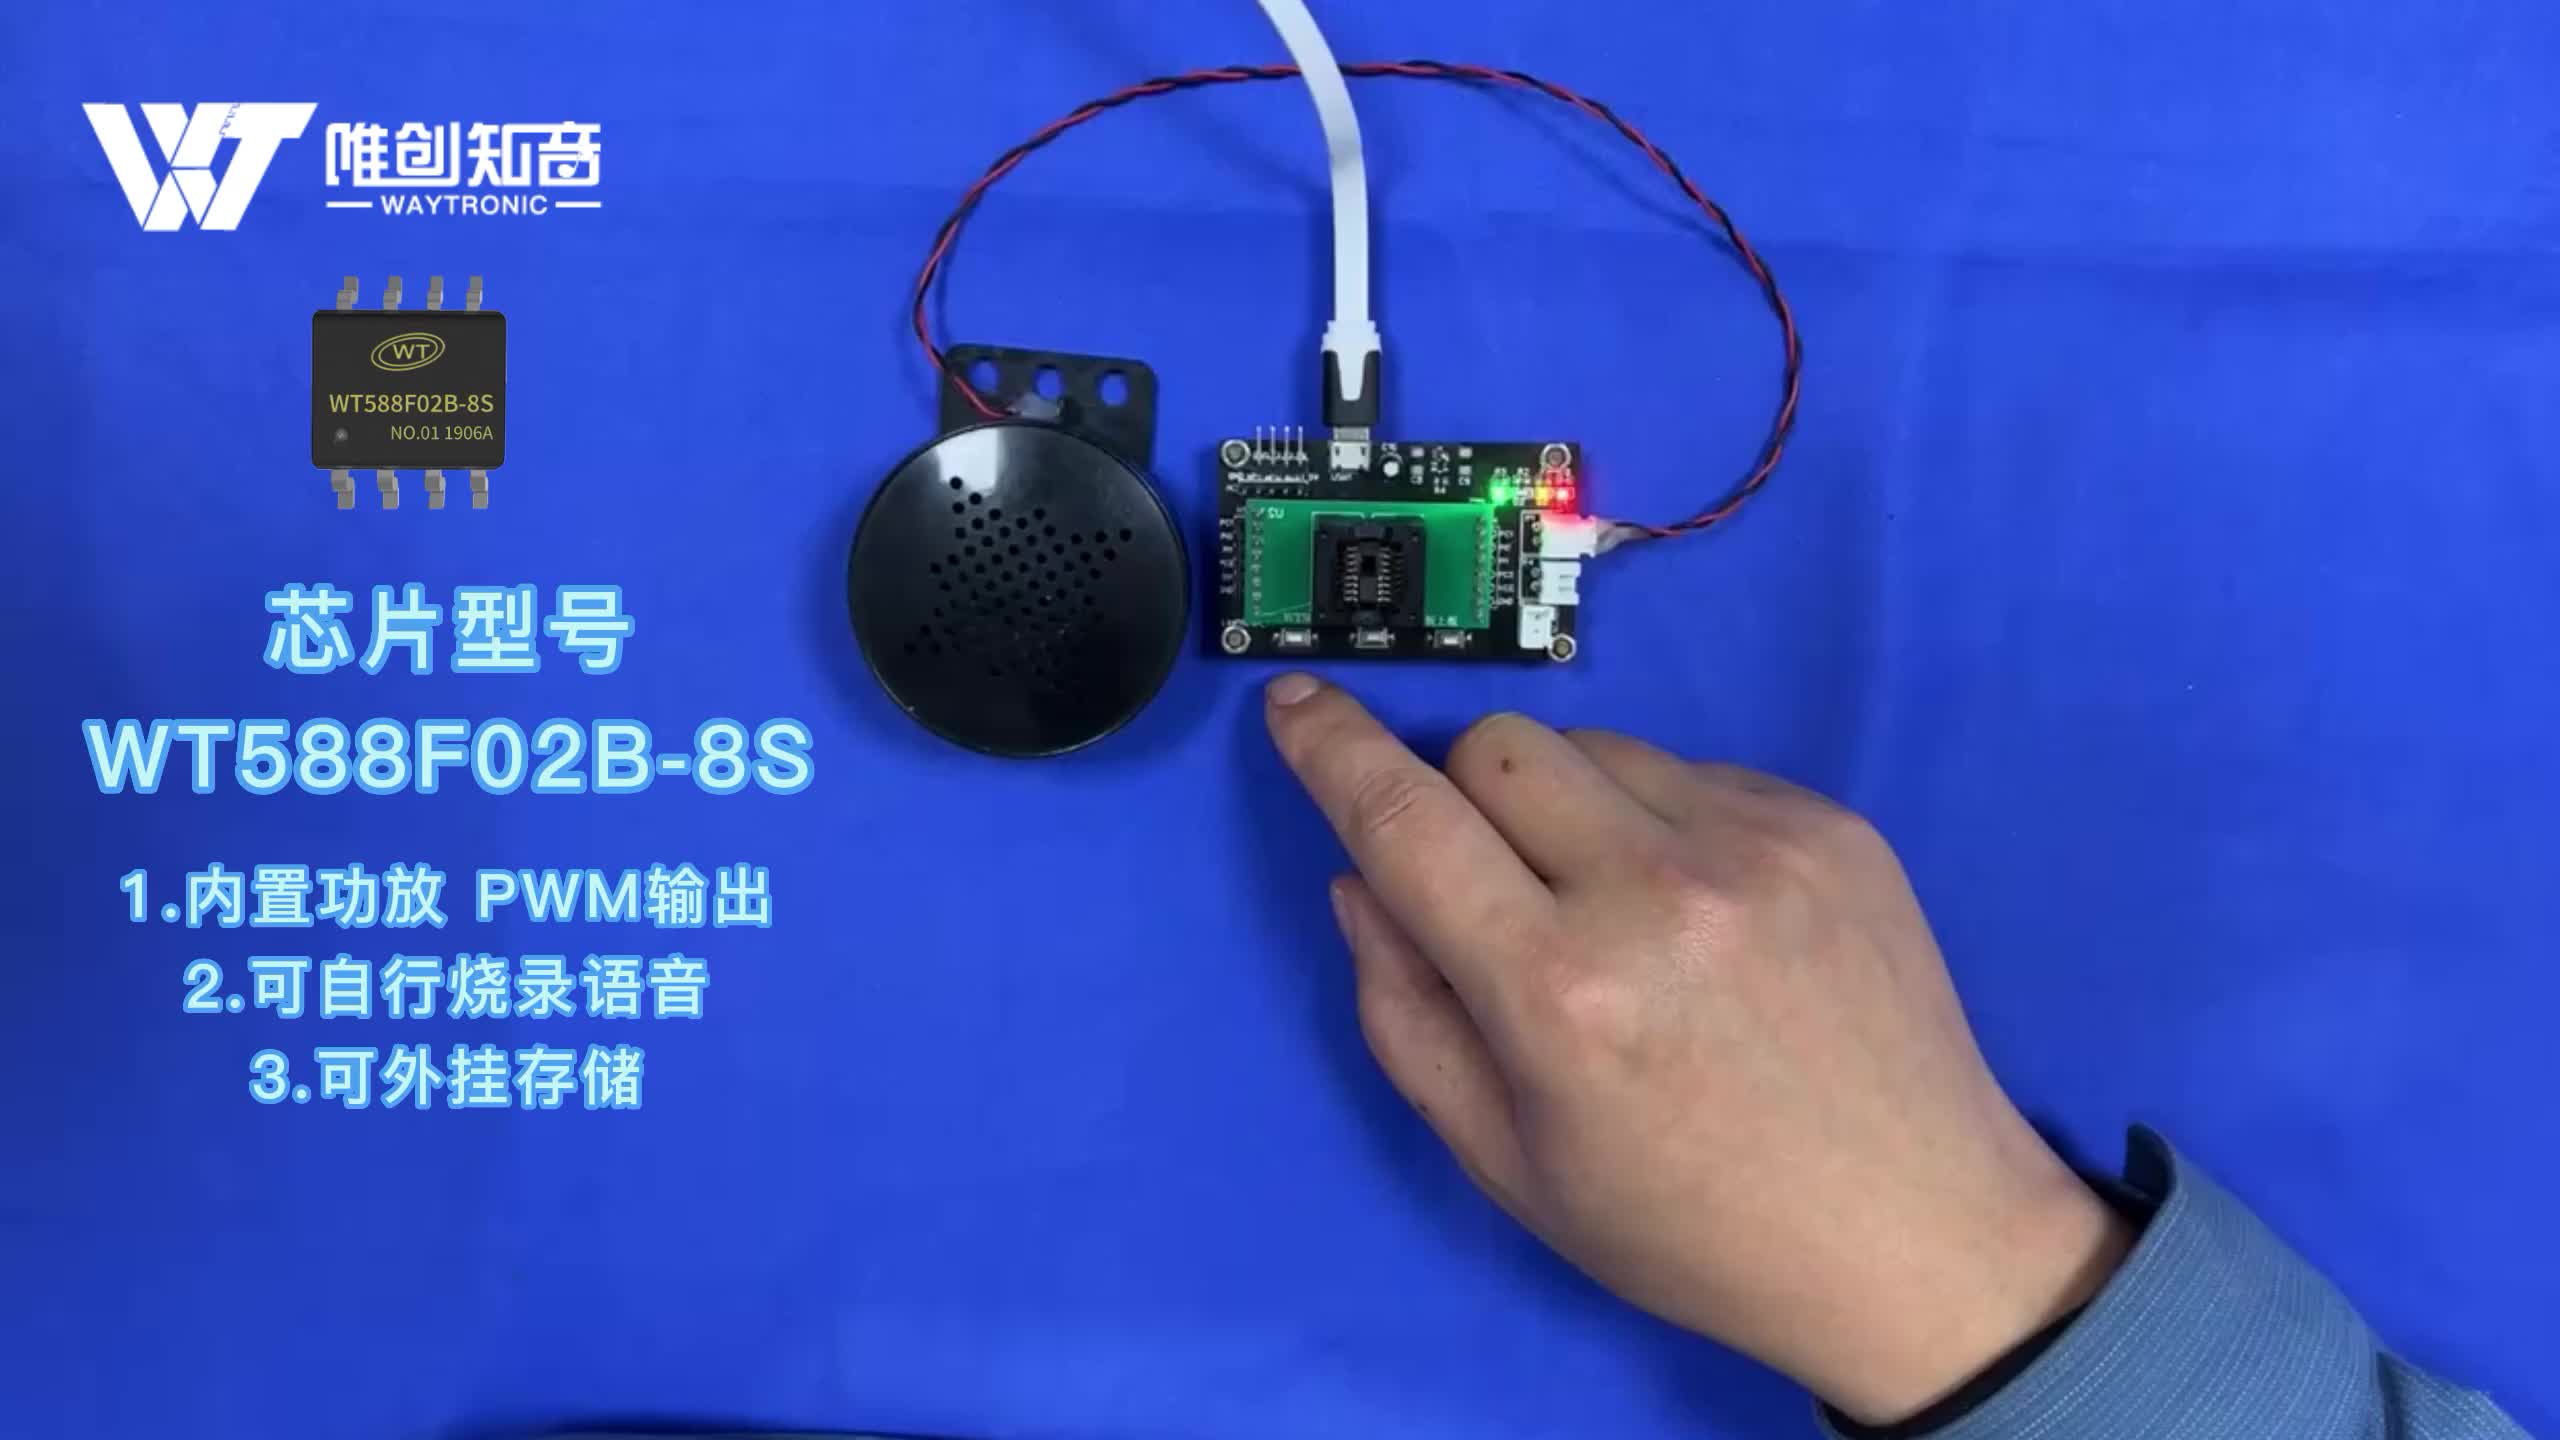 電飯煲語音芯片應用方案，支持自行燒錄語音與功能 WT588F02B-8S